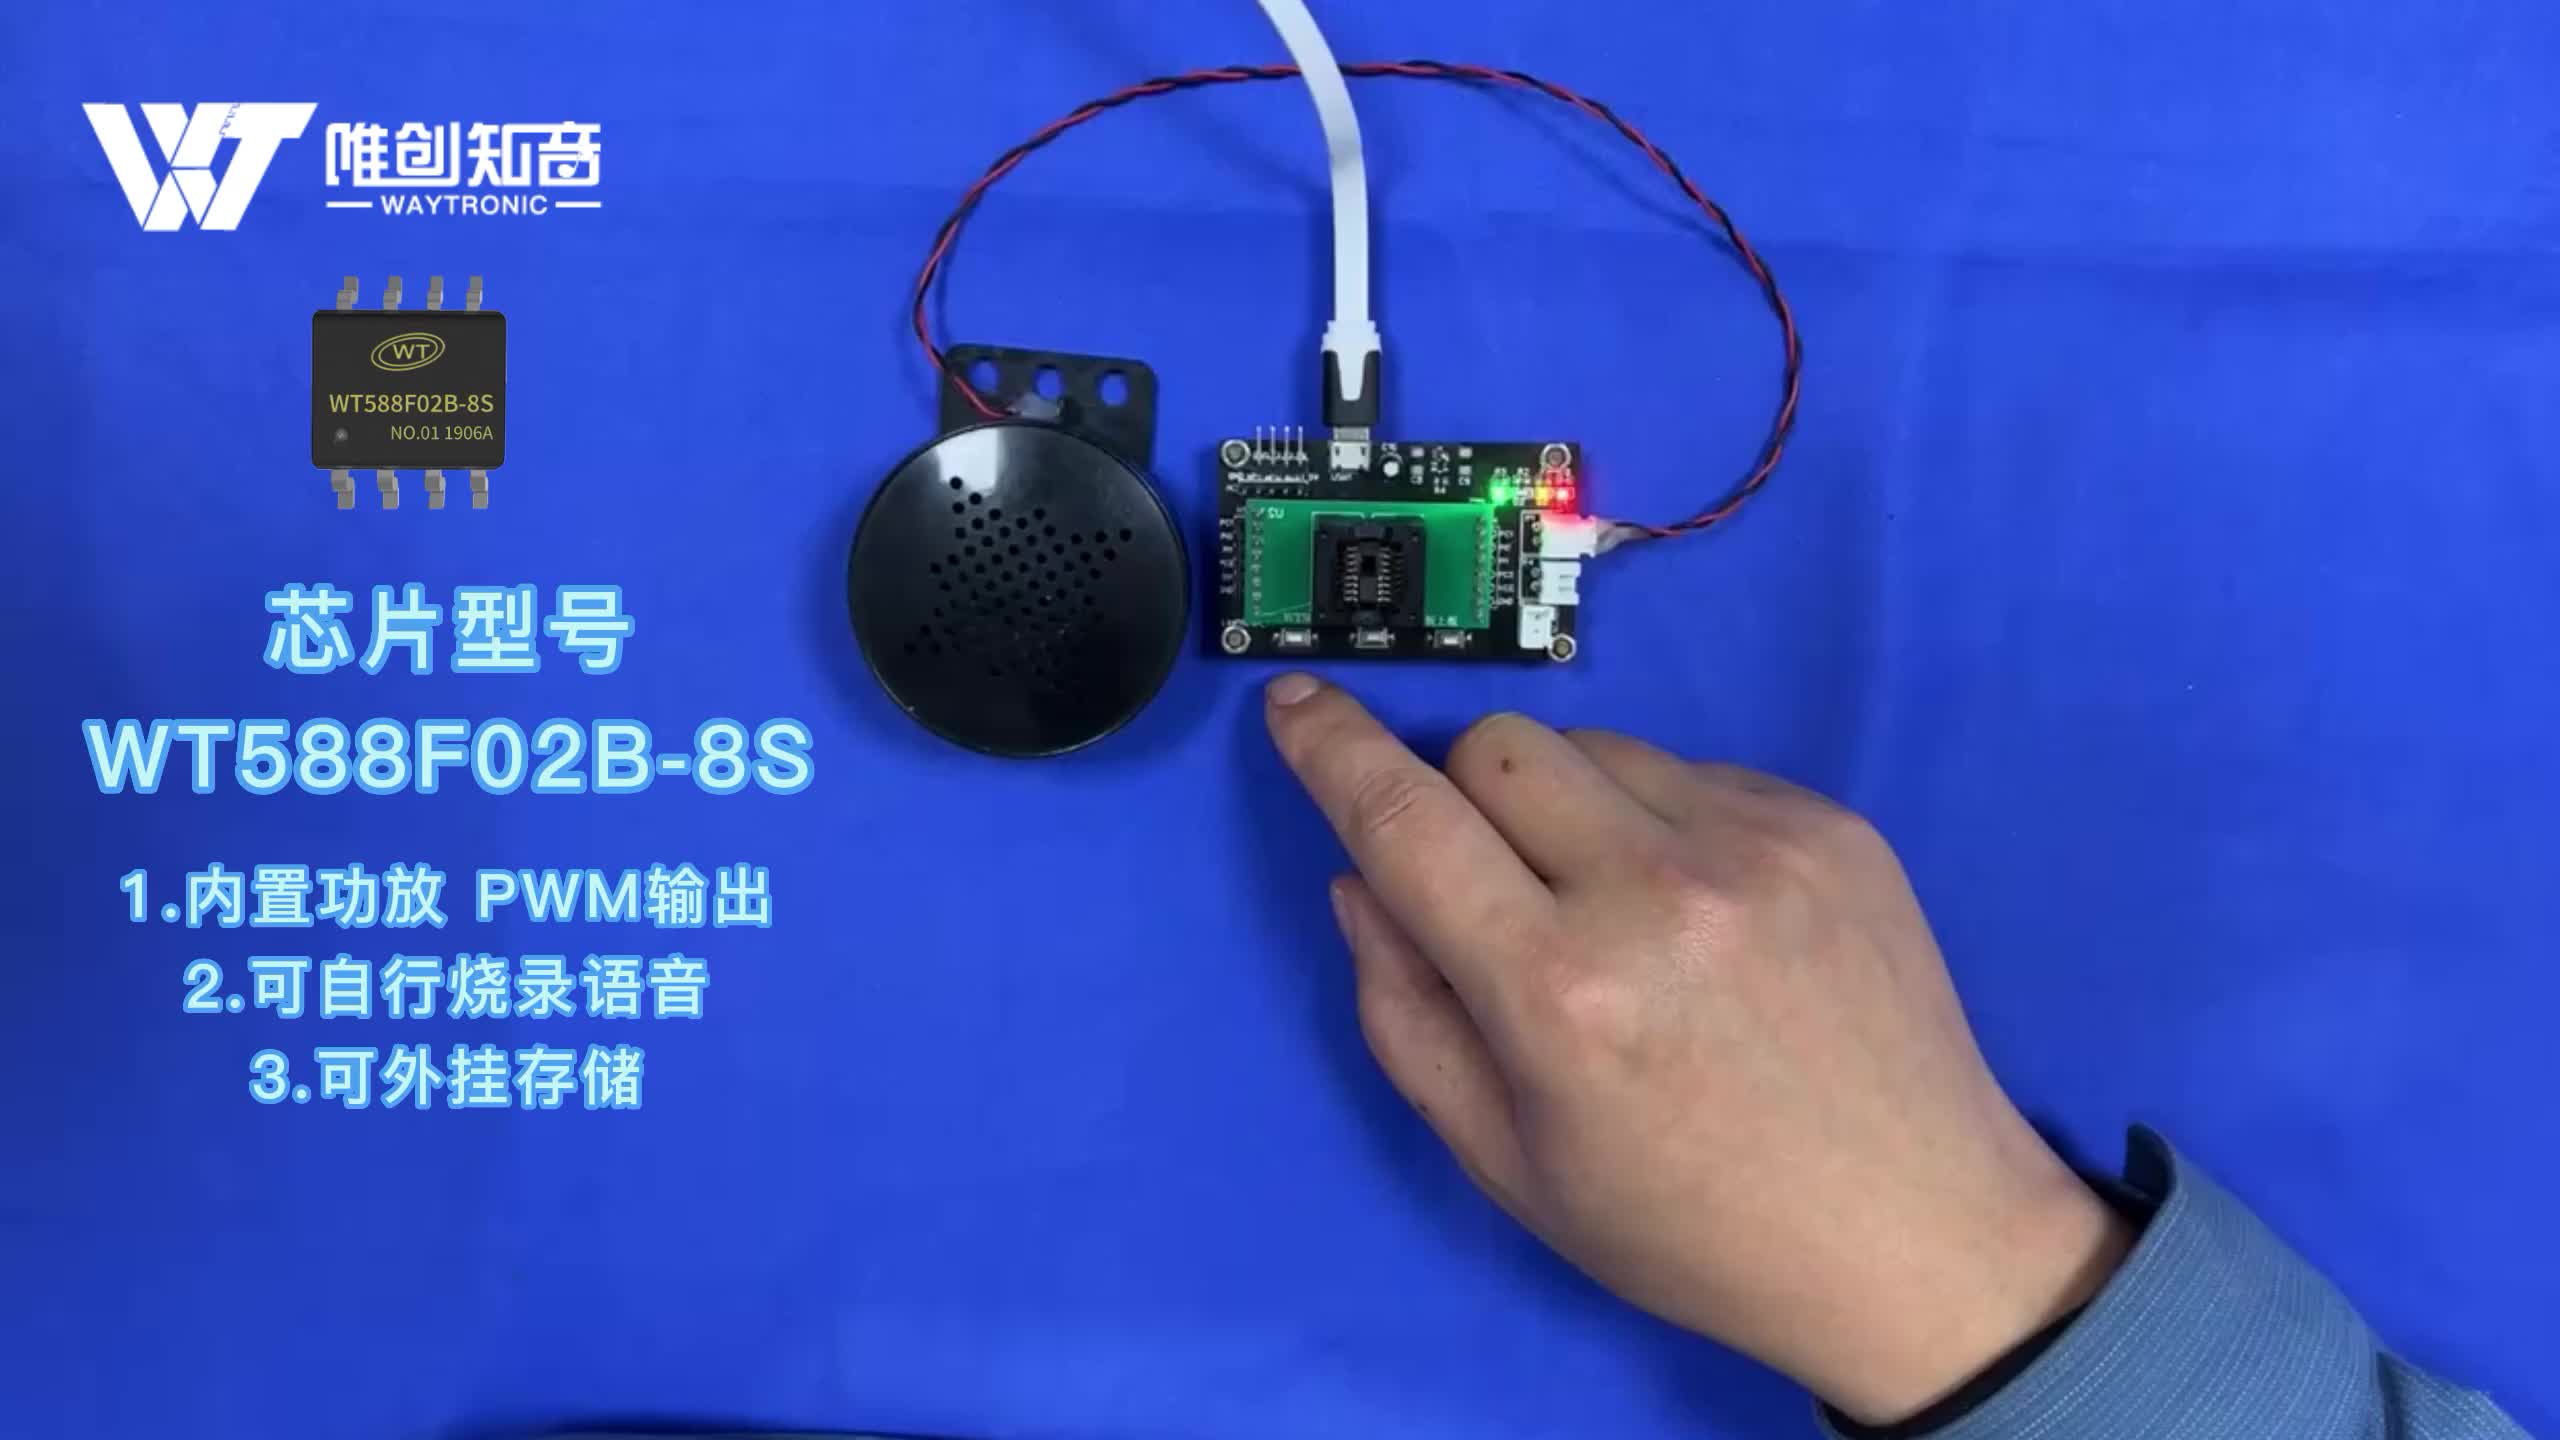 電飯煲語音芯片應用方案，支持自行燒錄語音與功能 WT588F02B-8S